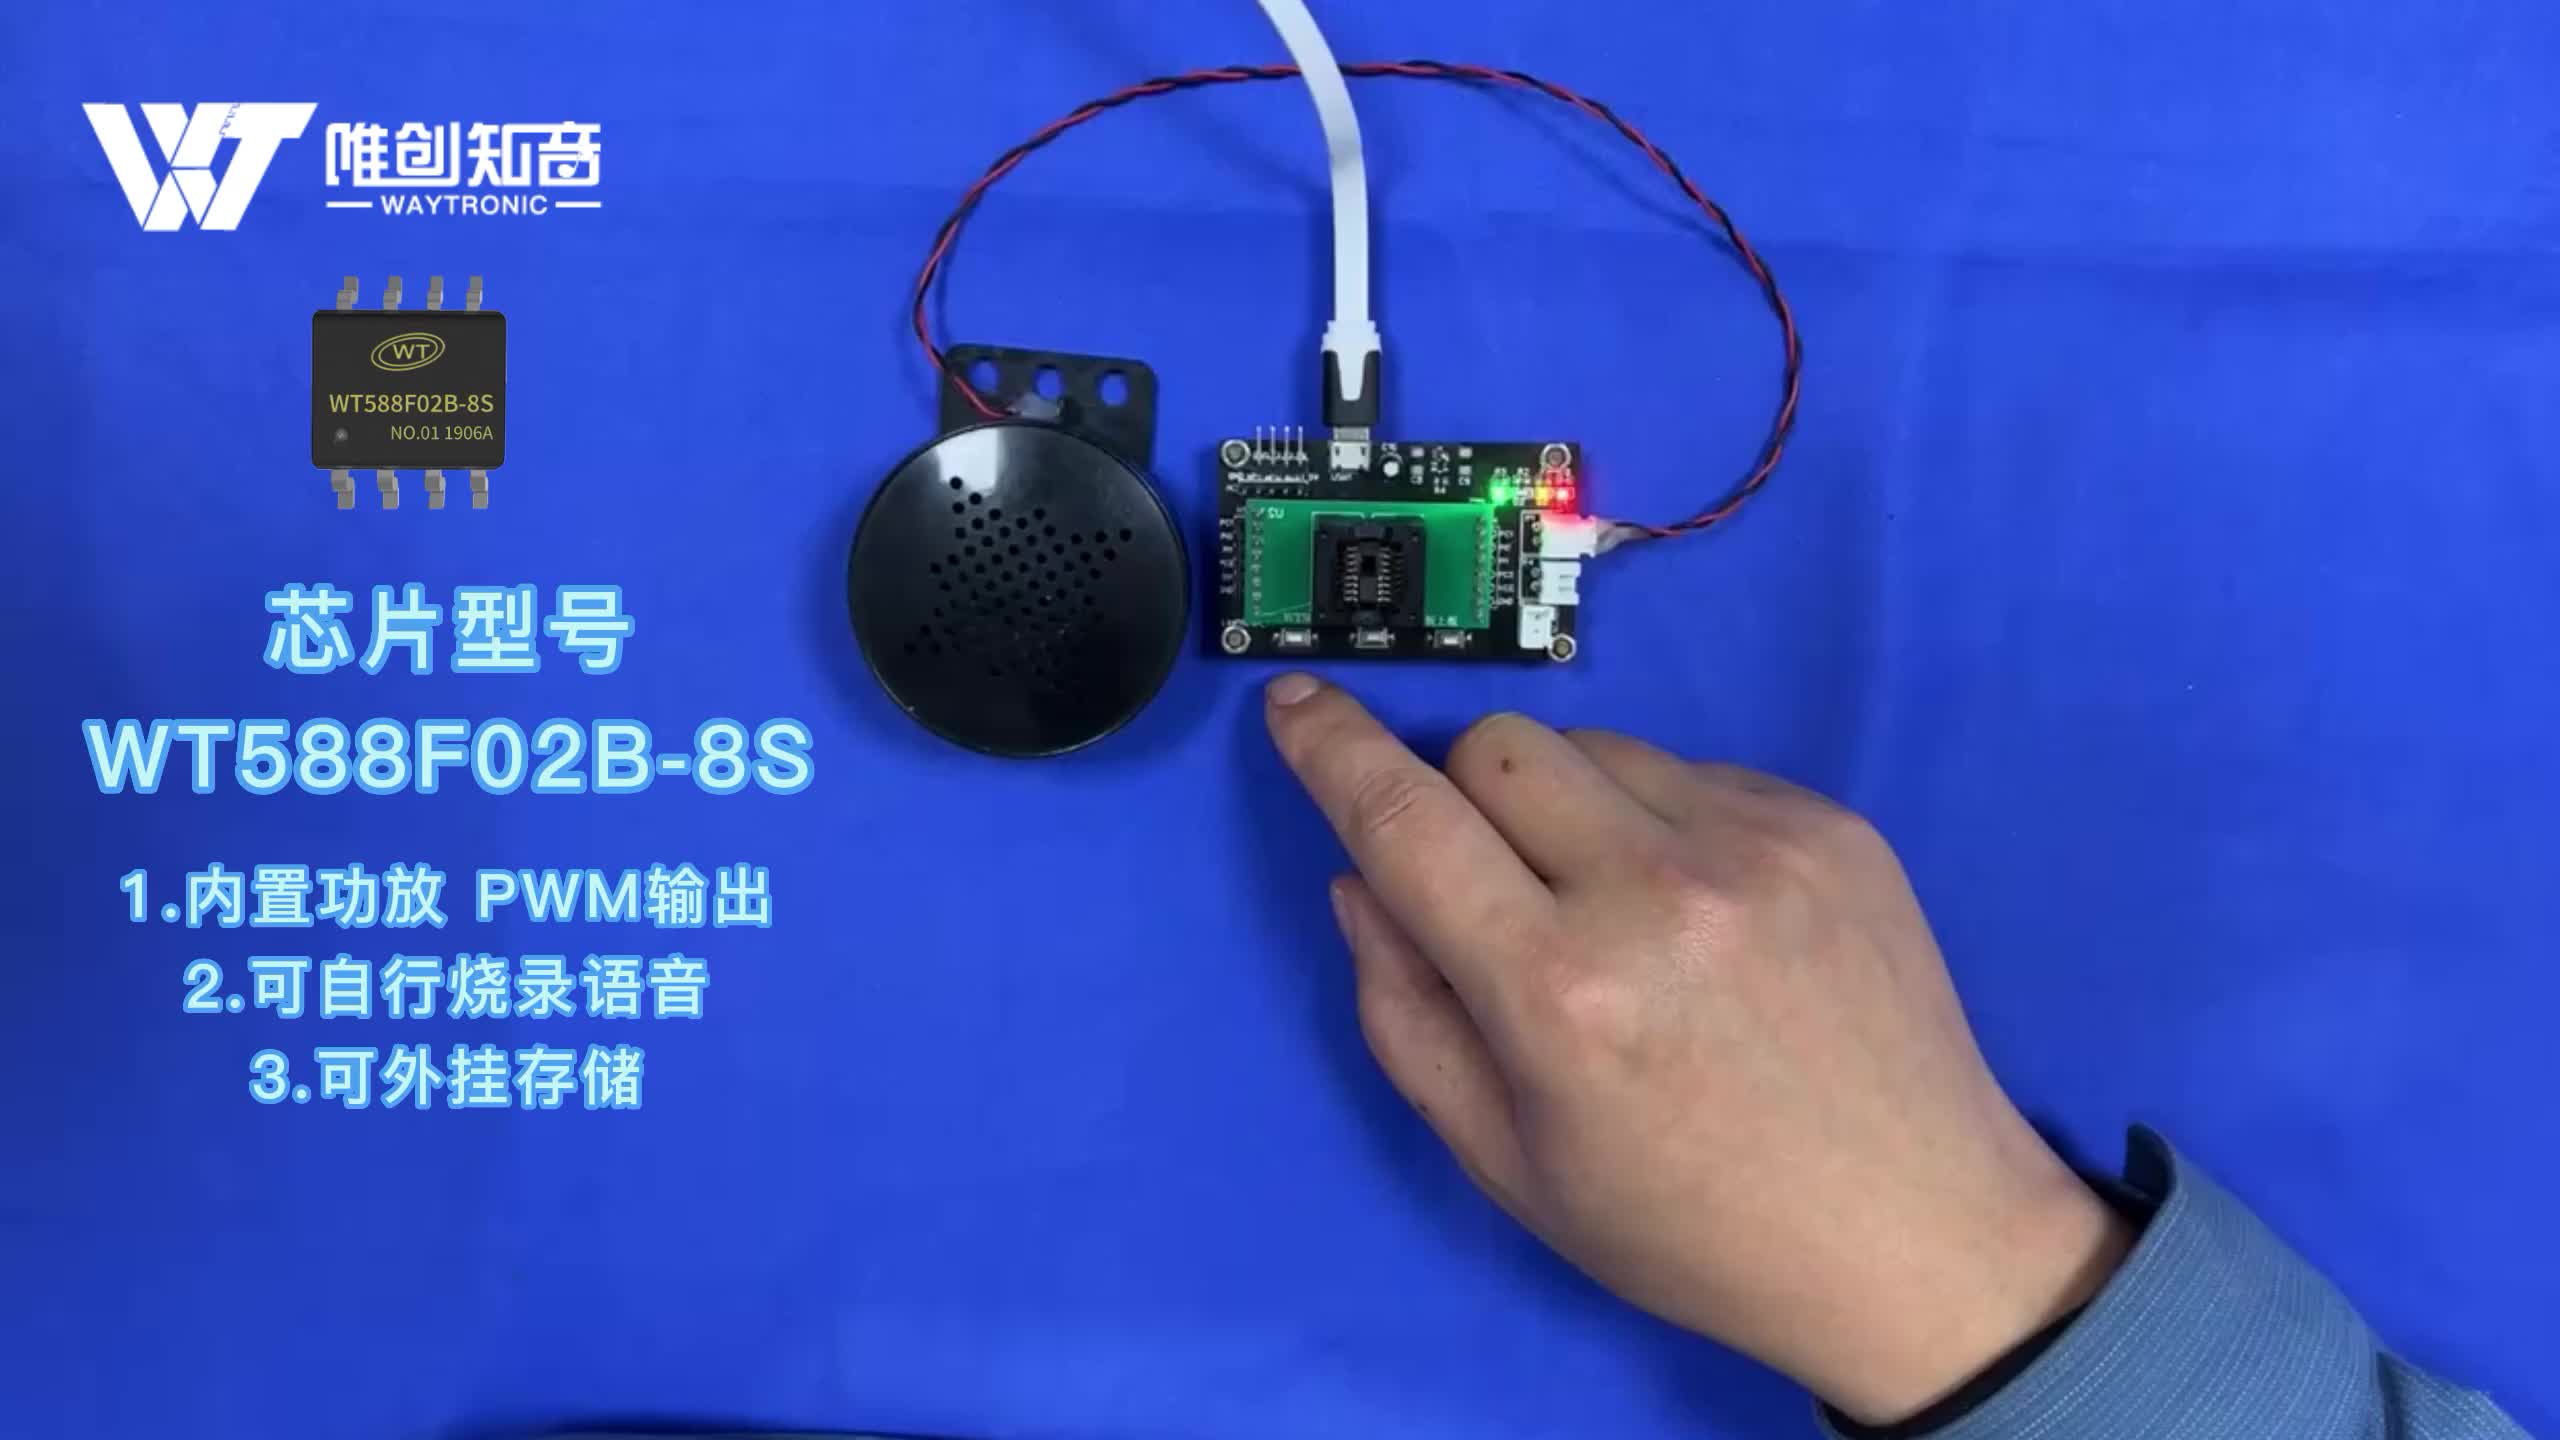 電飯煲語音芯片應用方案，支持自行燒錄語音與功能 WT588F02B-8S